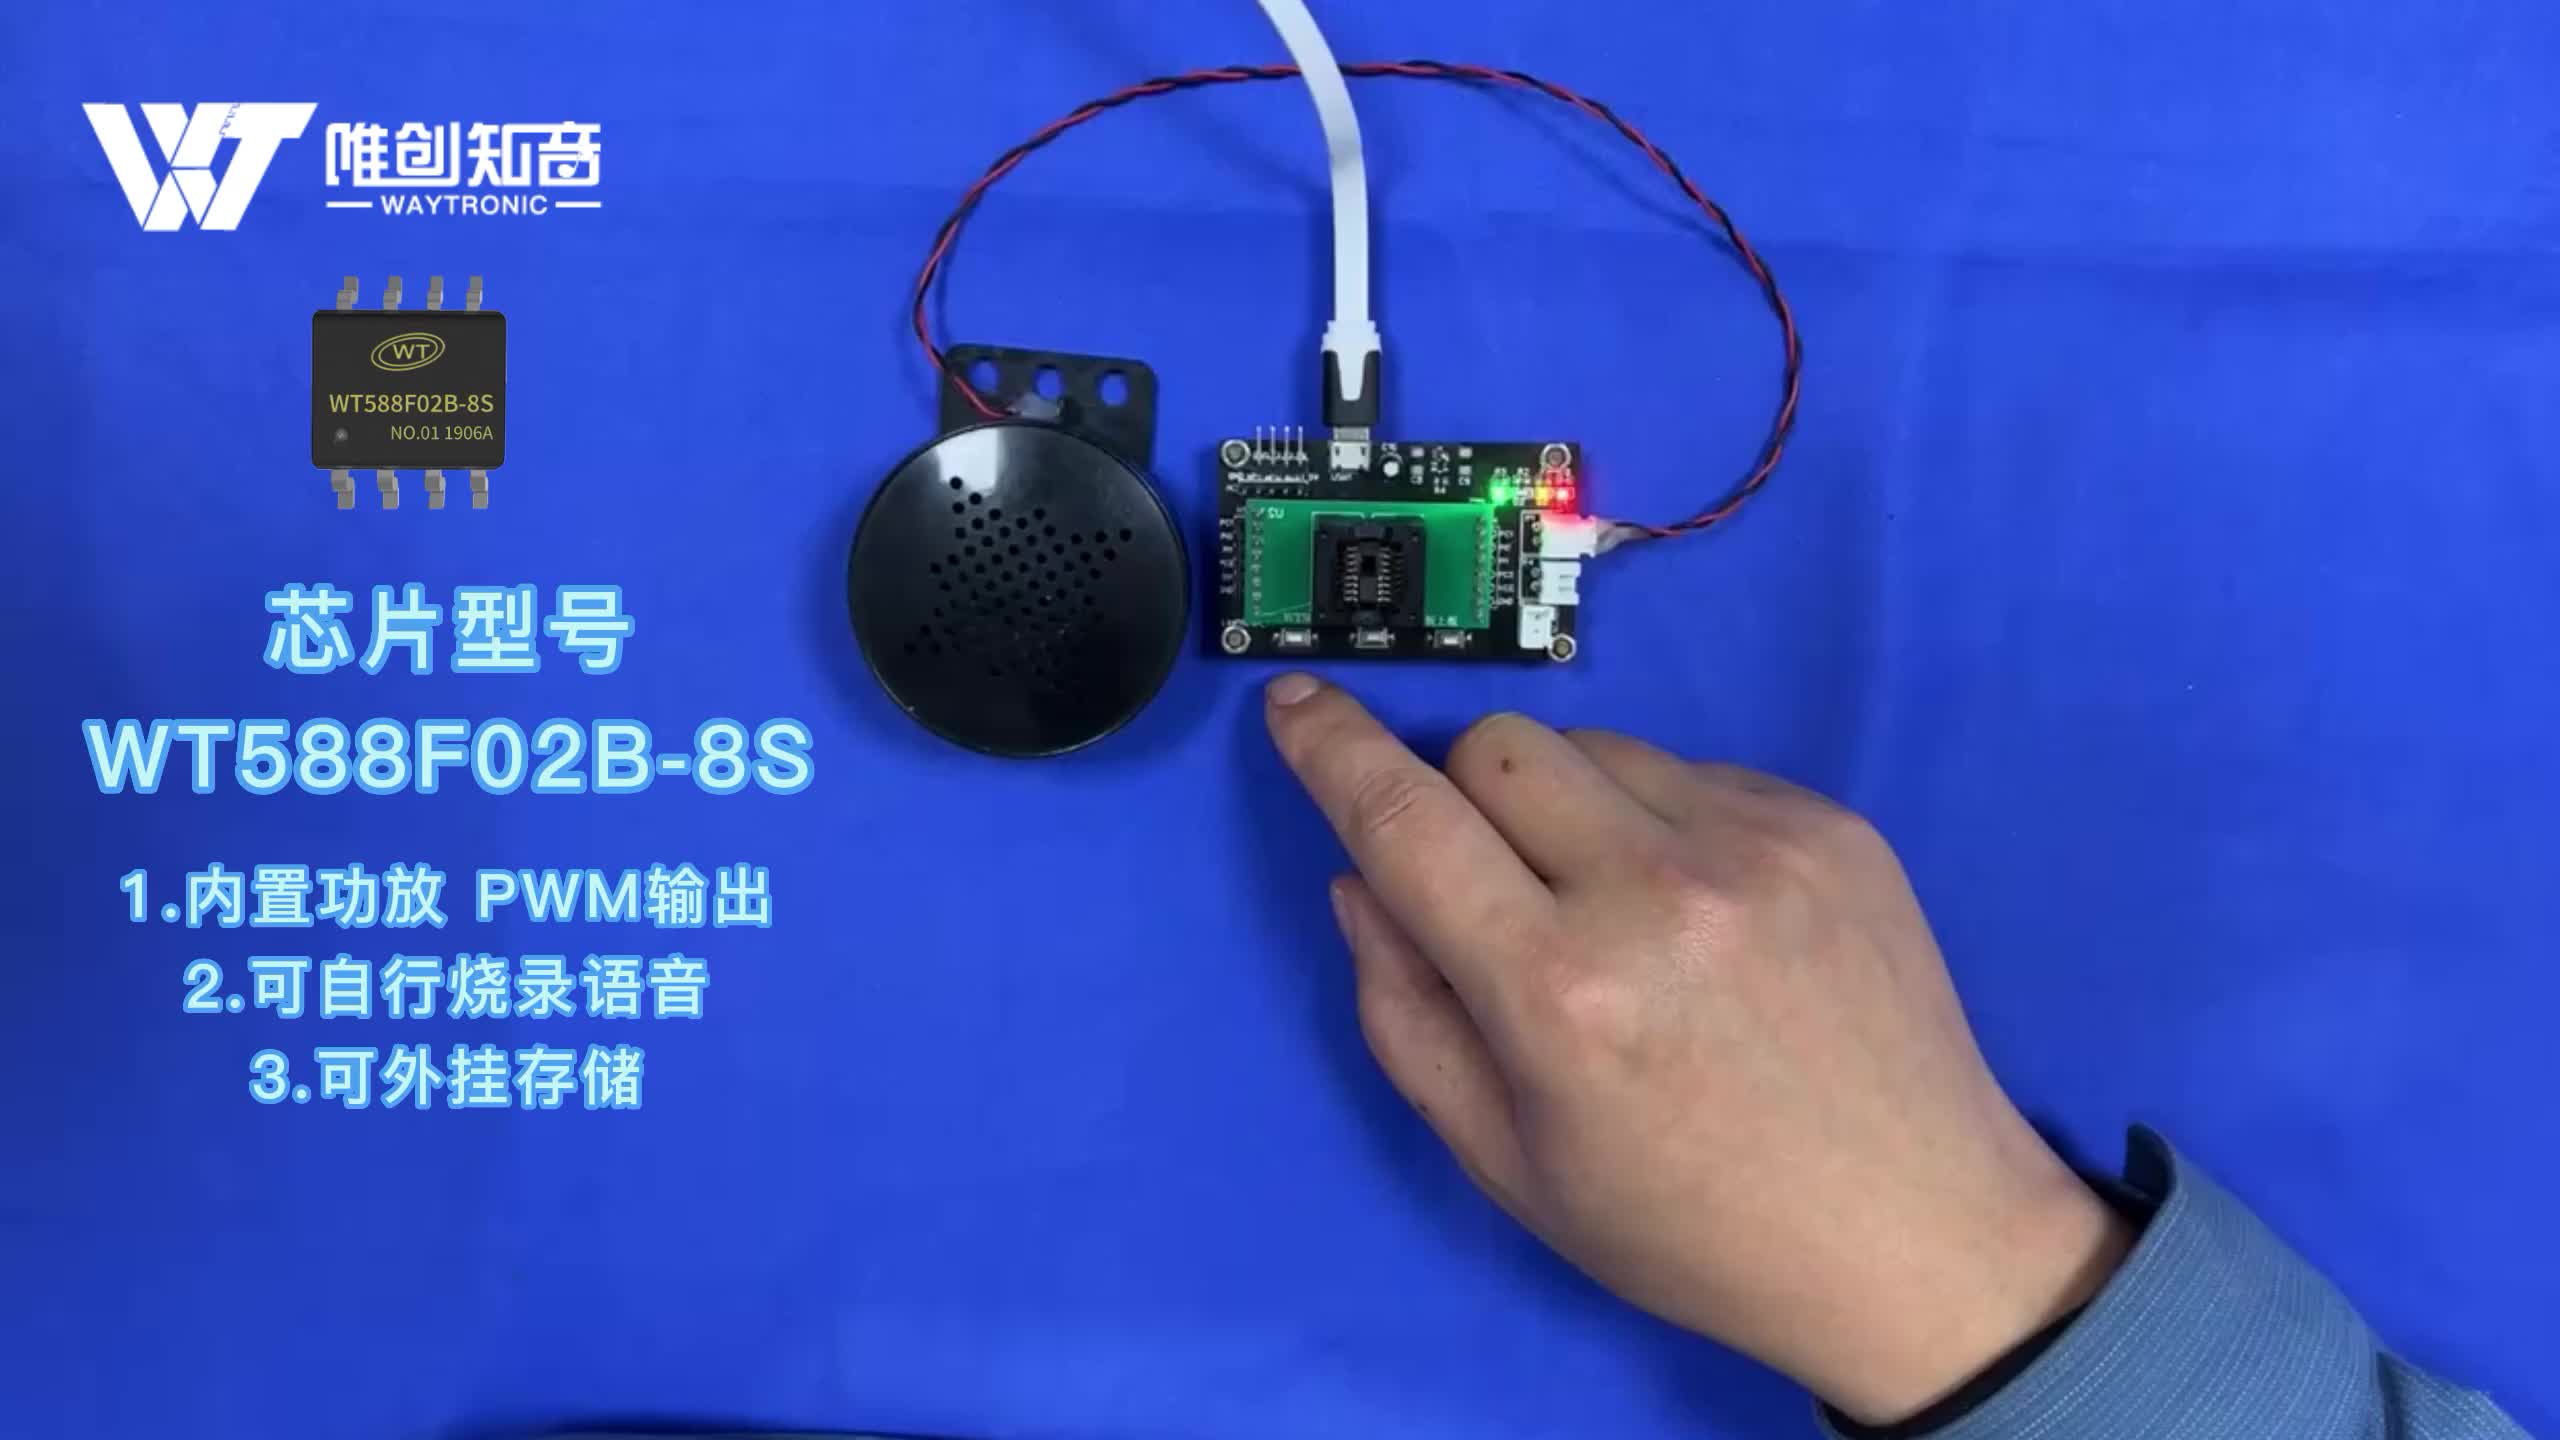 電飯煲語音芯片應用方案，支持自行燒錄語音與功能 WT588F02B-8S